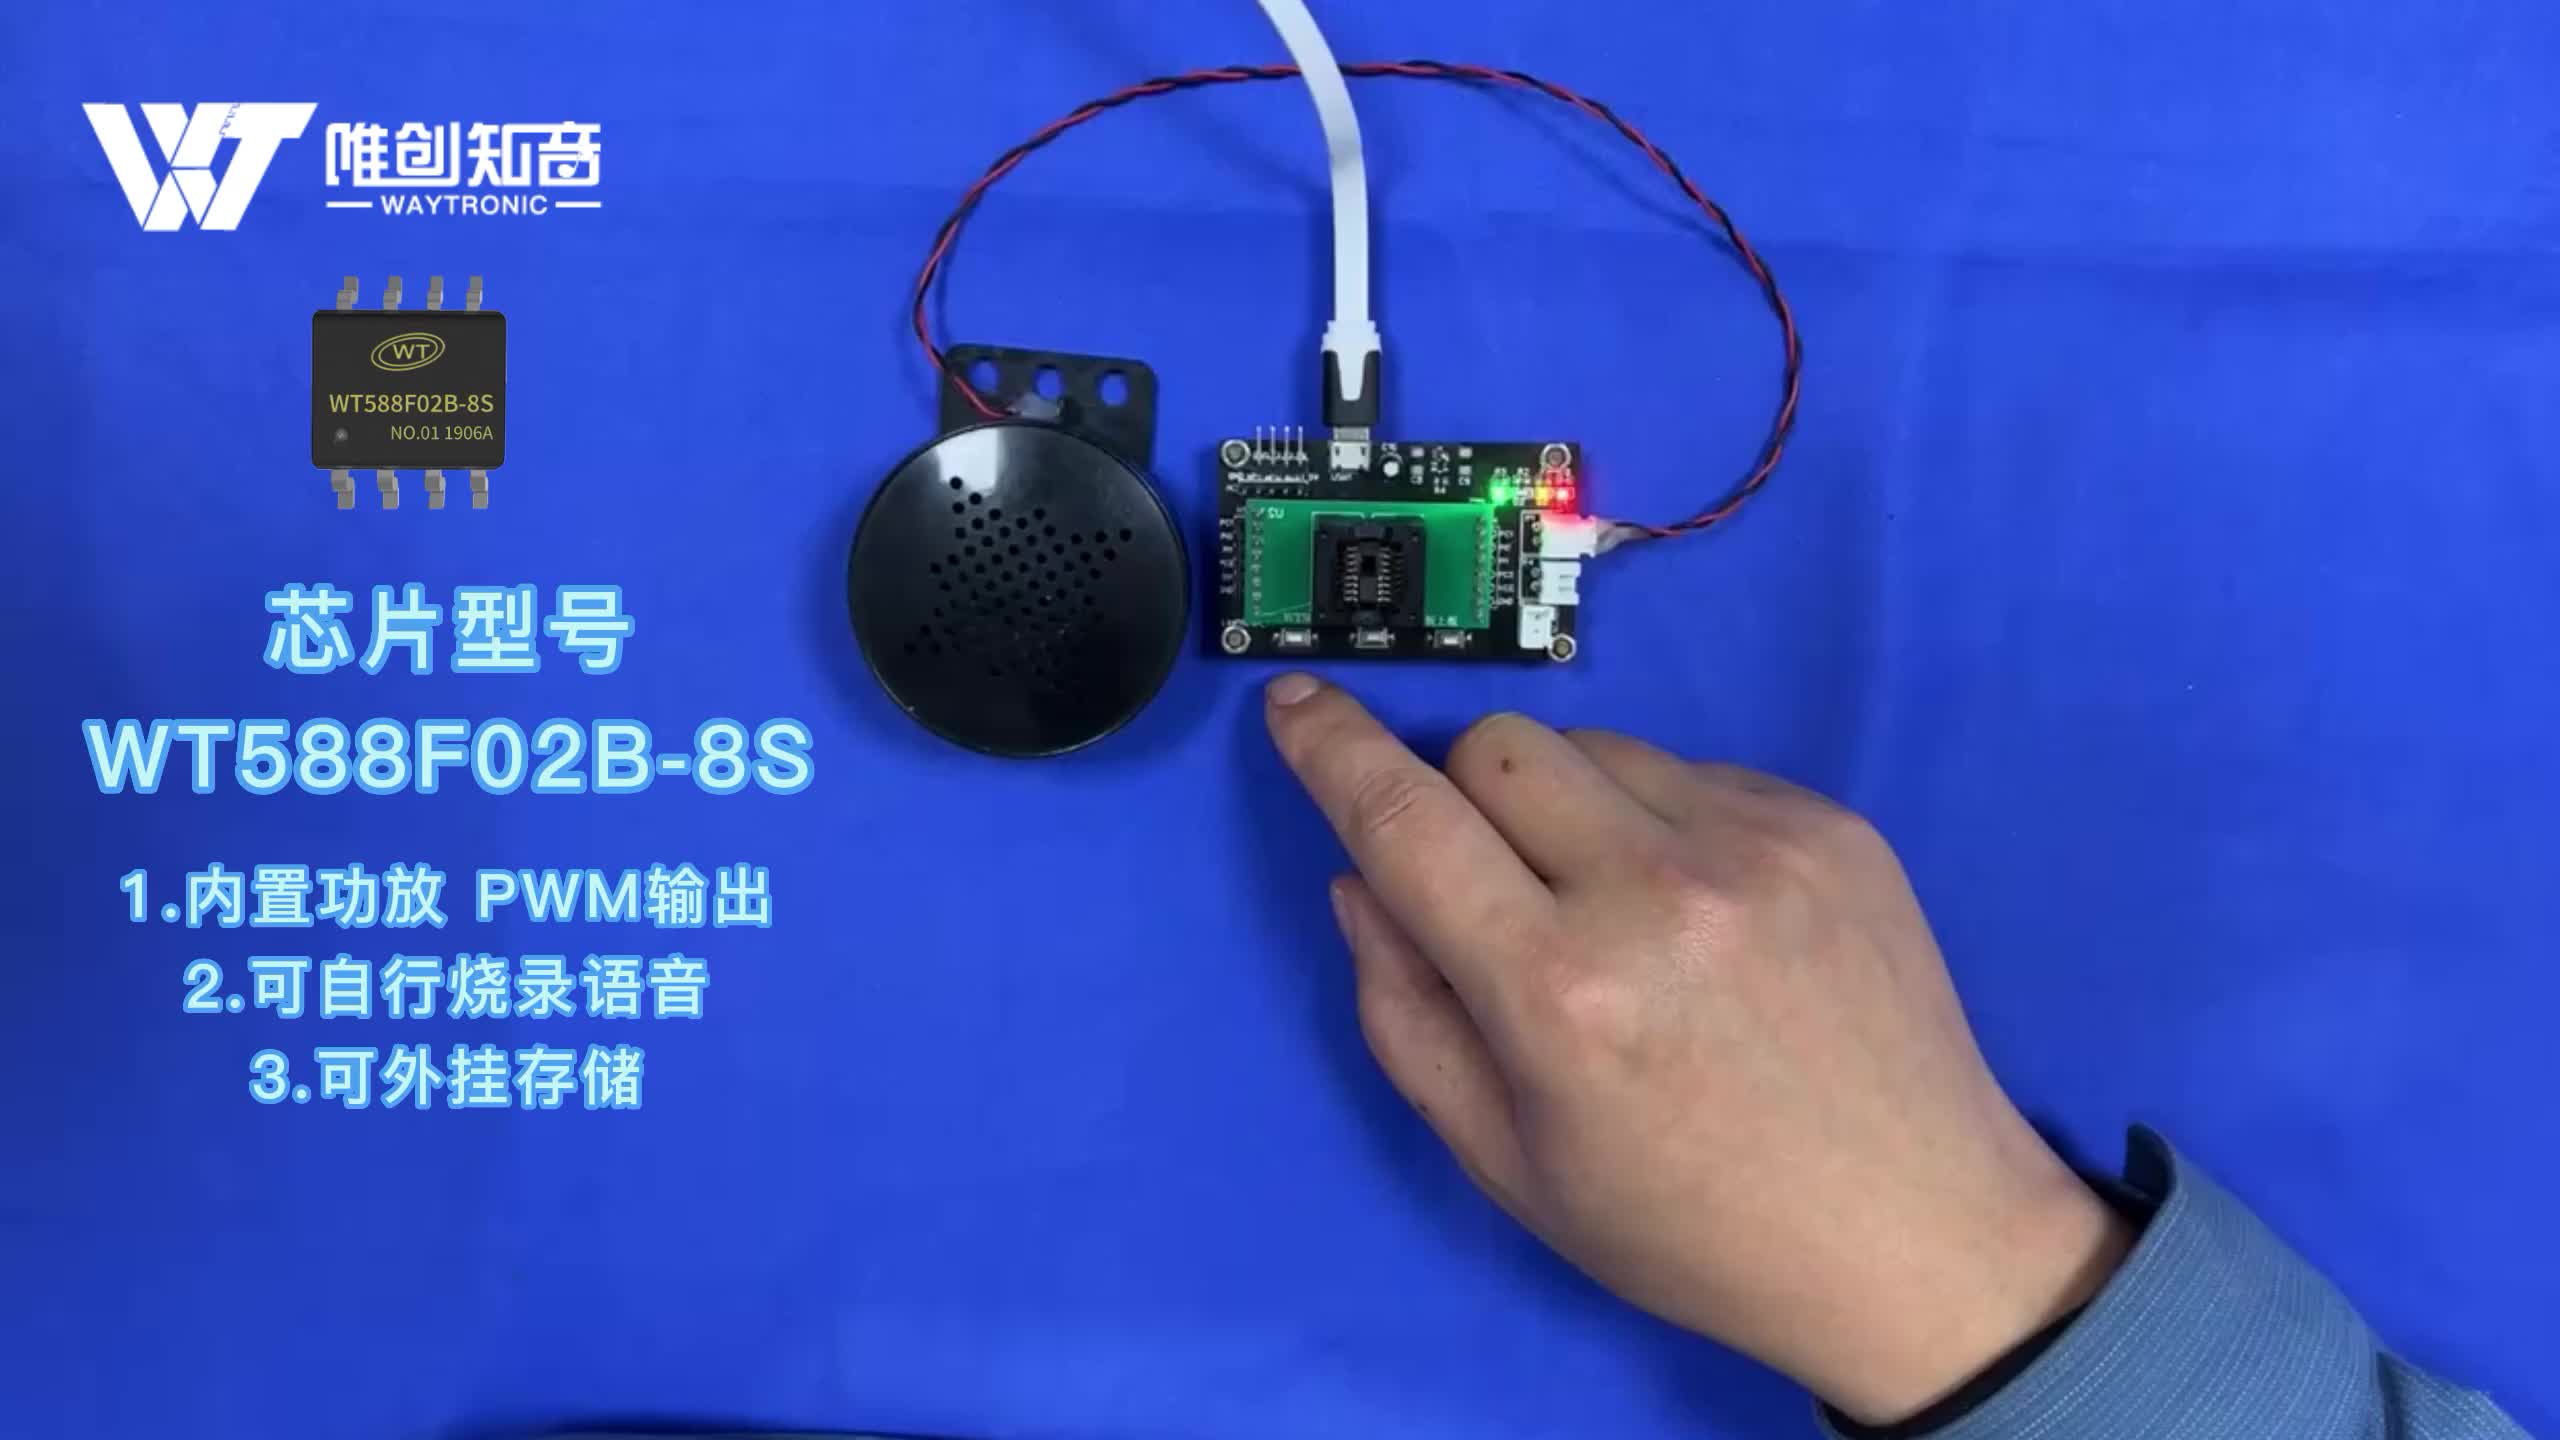 電飯煲語音芯片應用方案，支持自行燒錄語音與功能 WT588F02B-8S